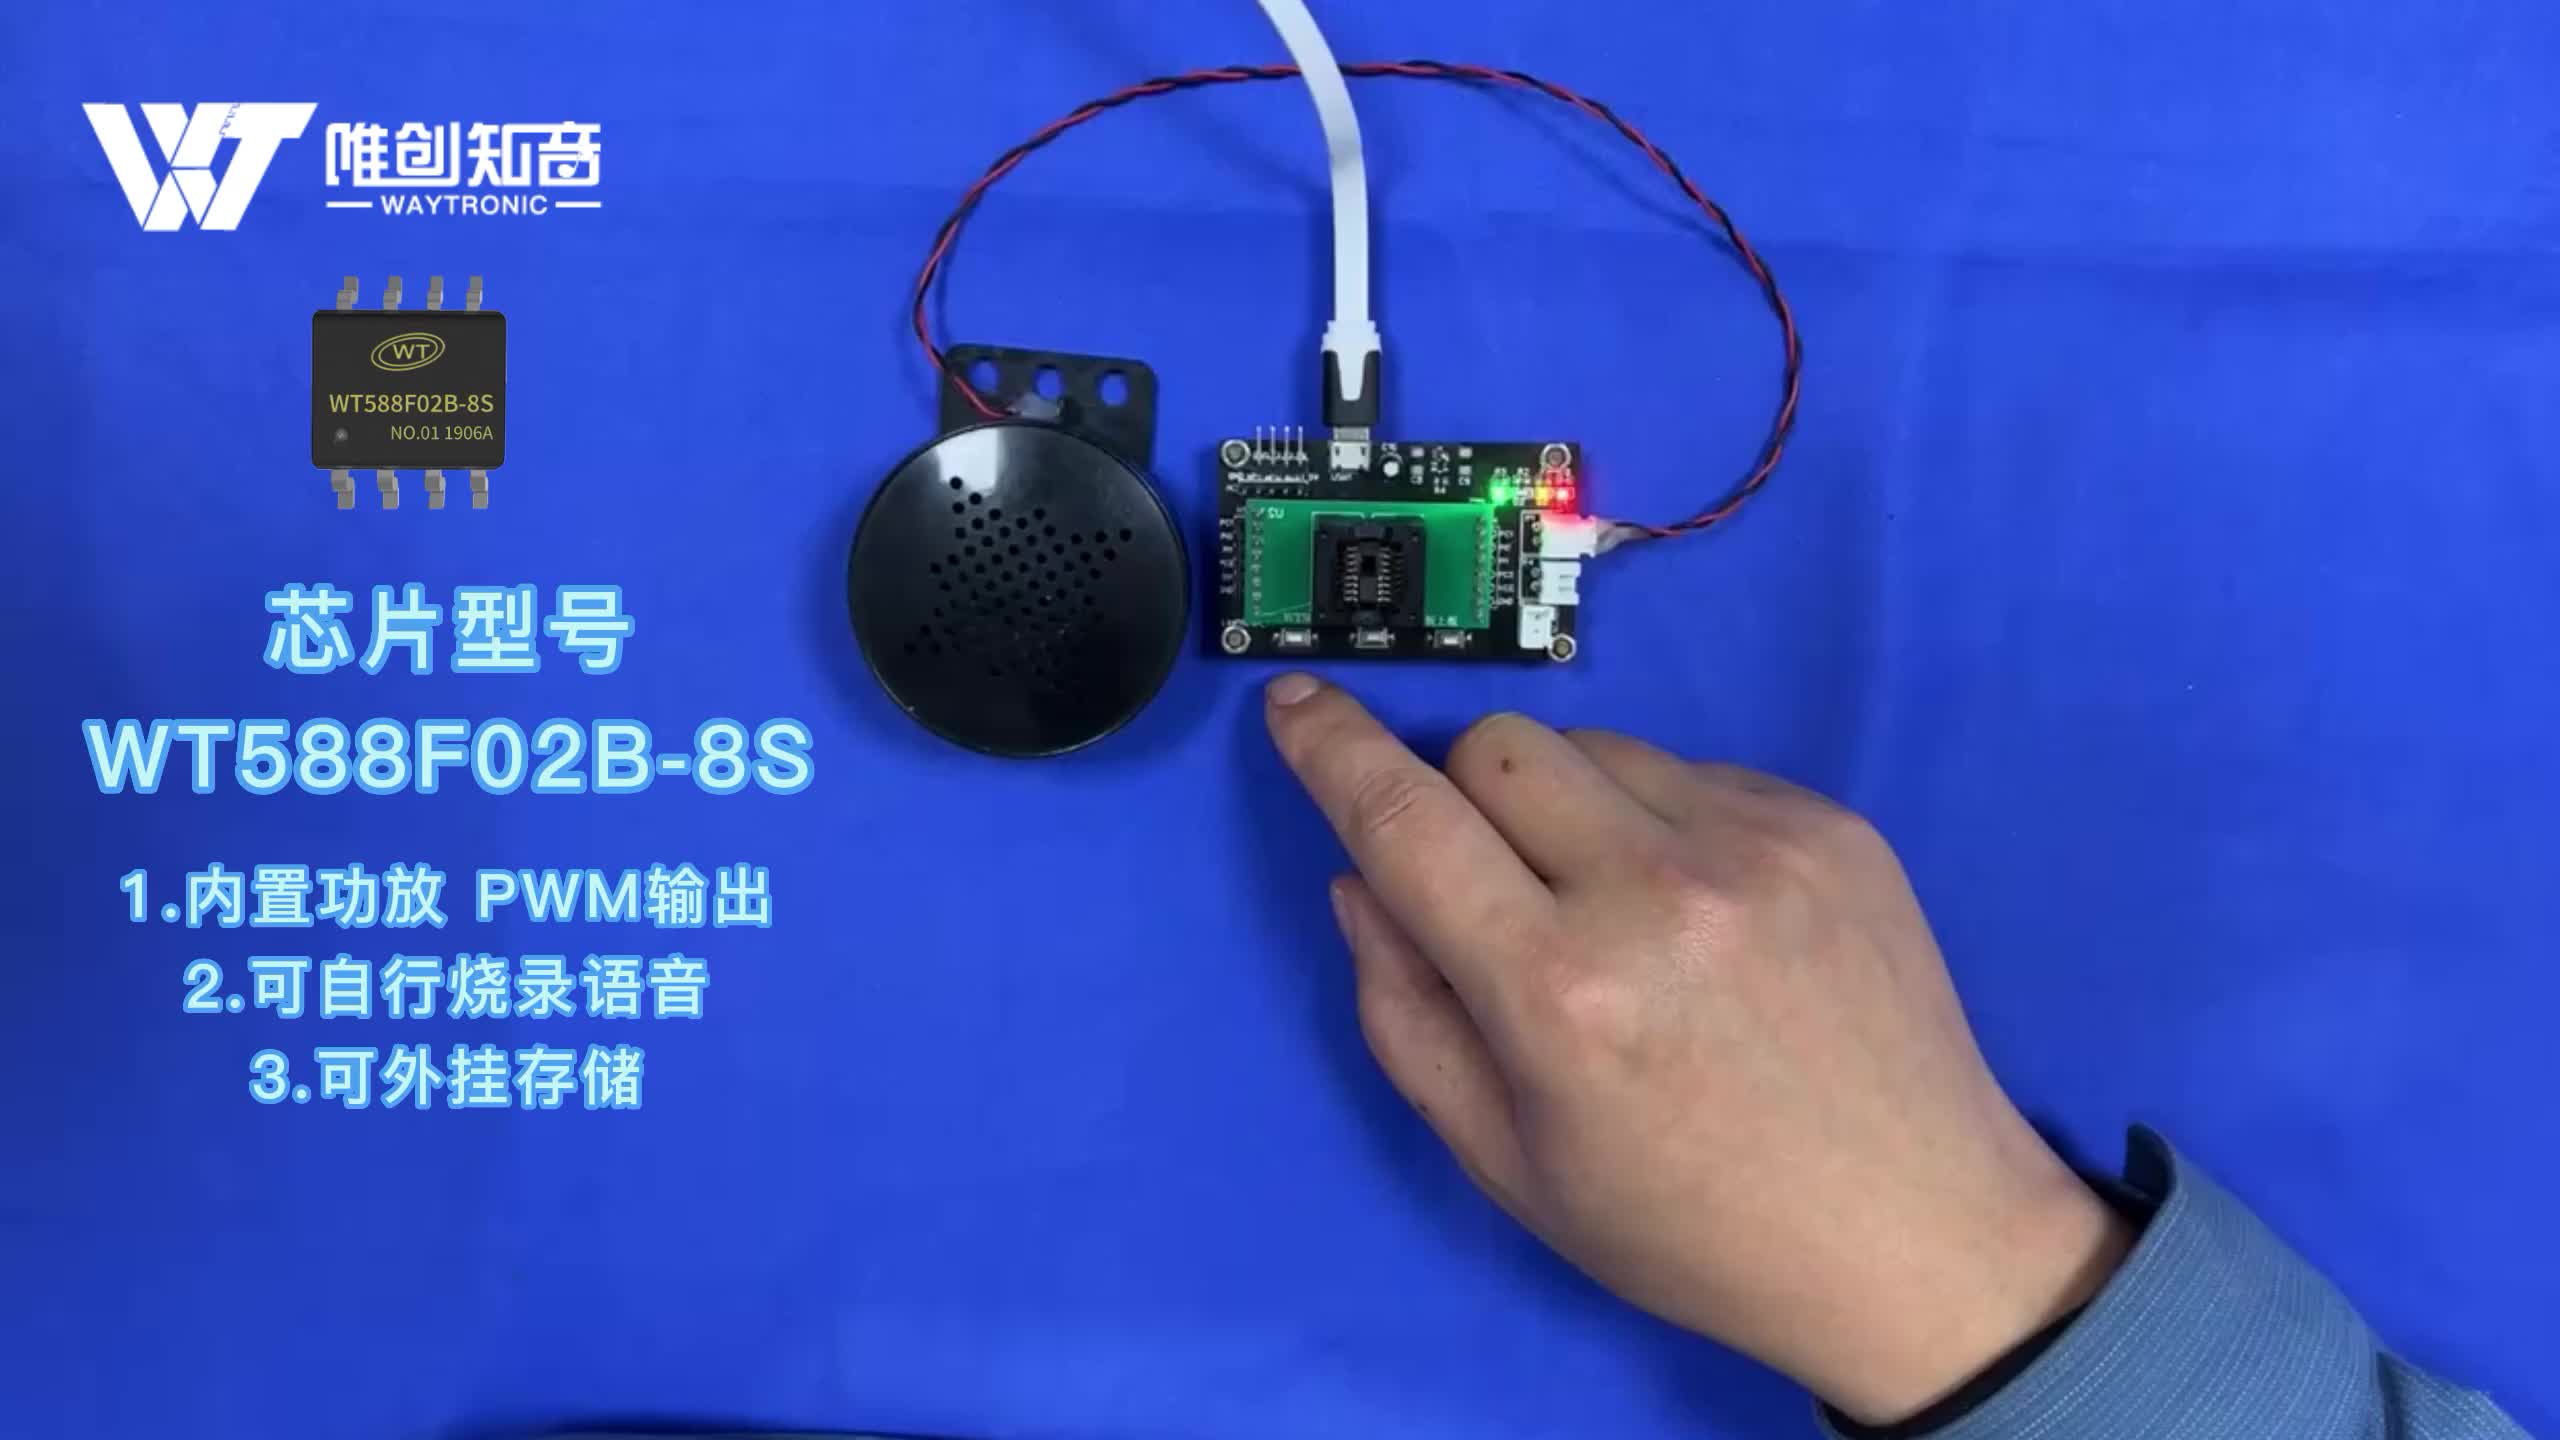 電飯煲語音芯片應用方案，支持自行燒錄語音與功能 WT588F02B-8S